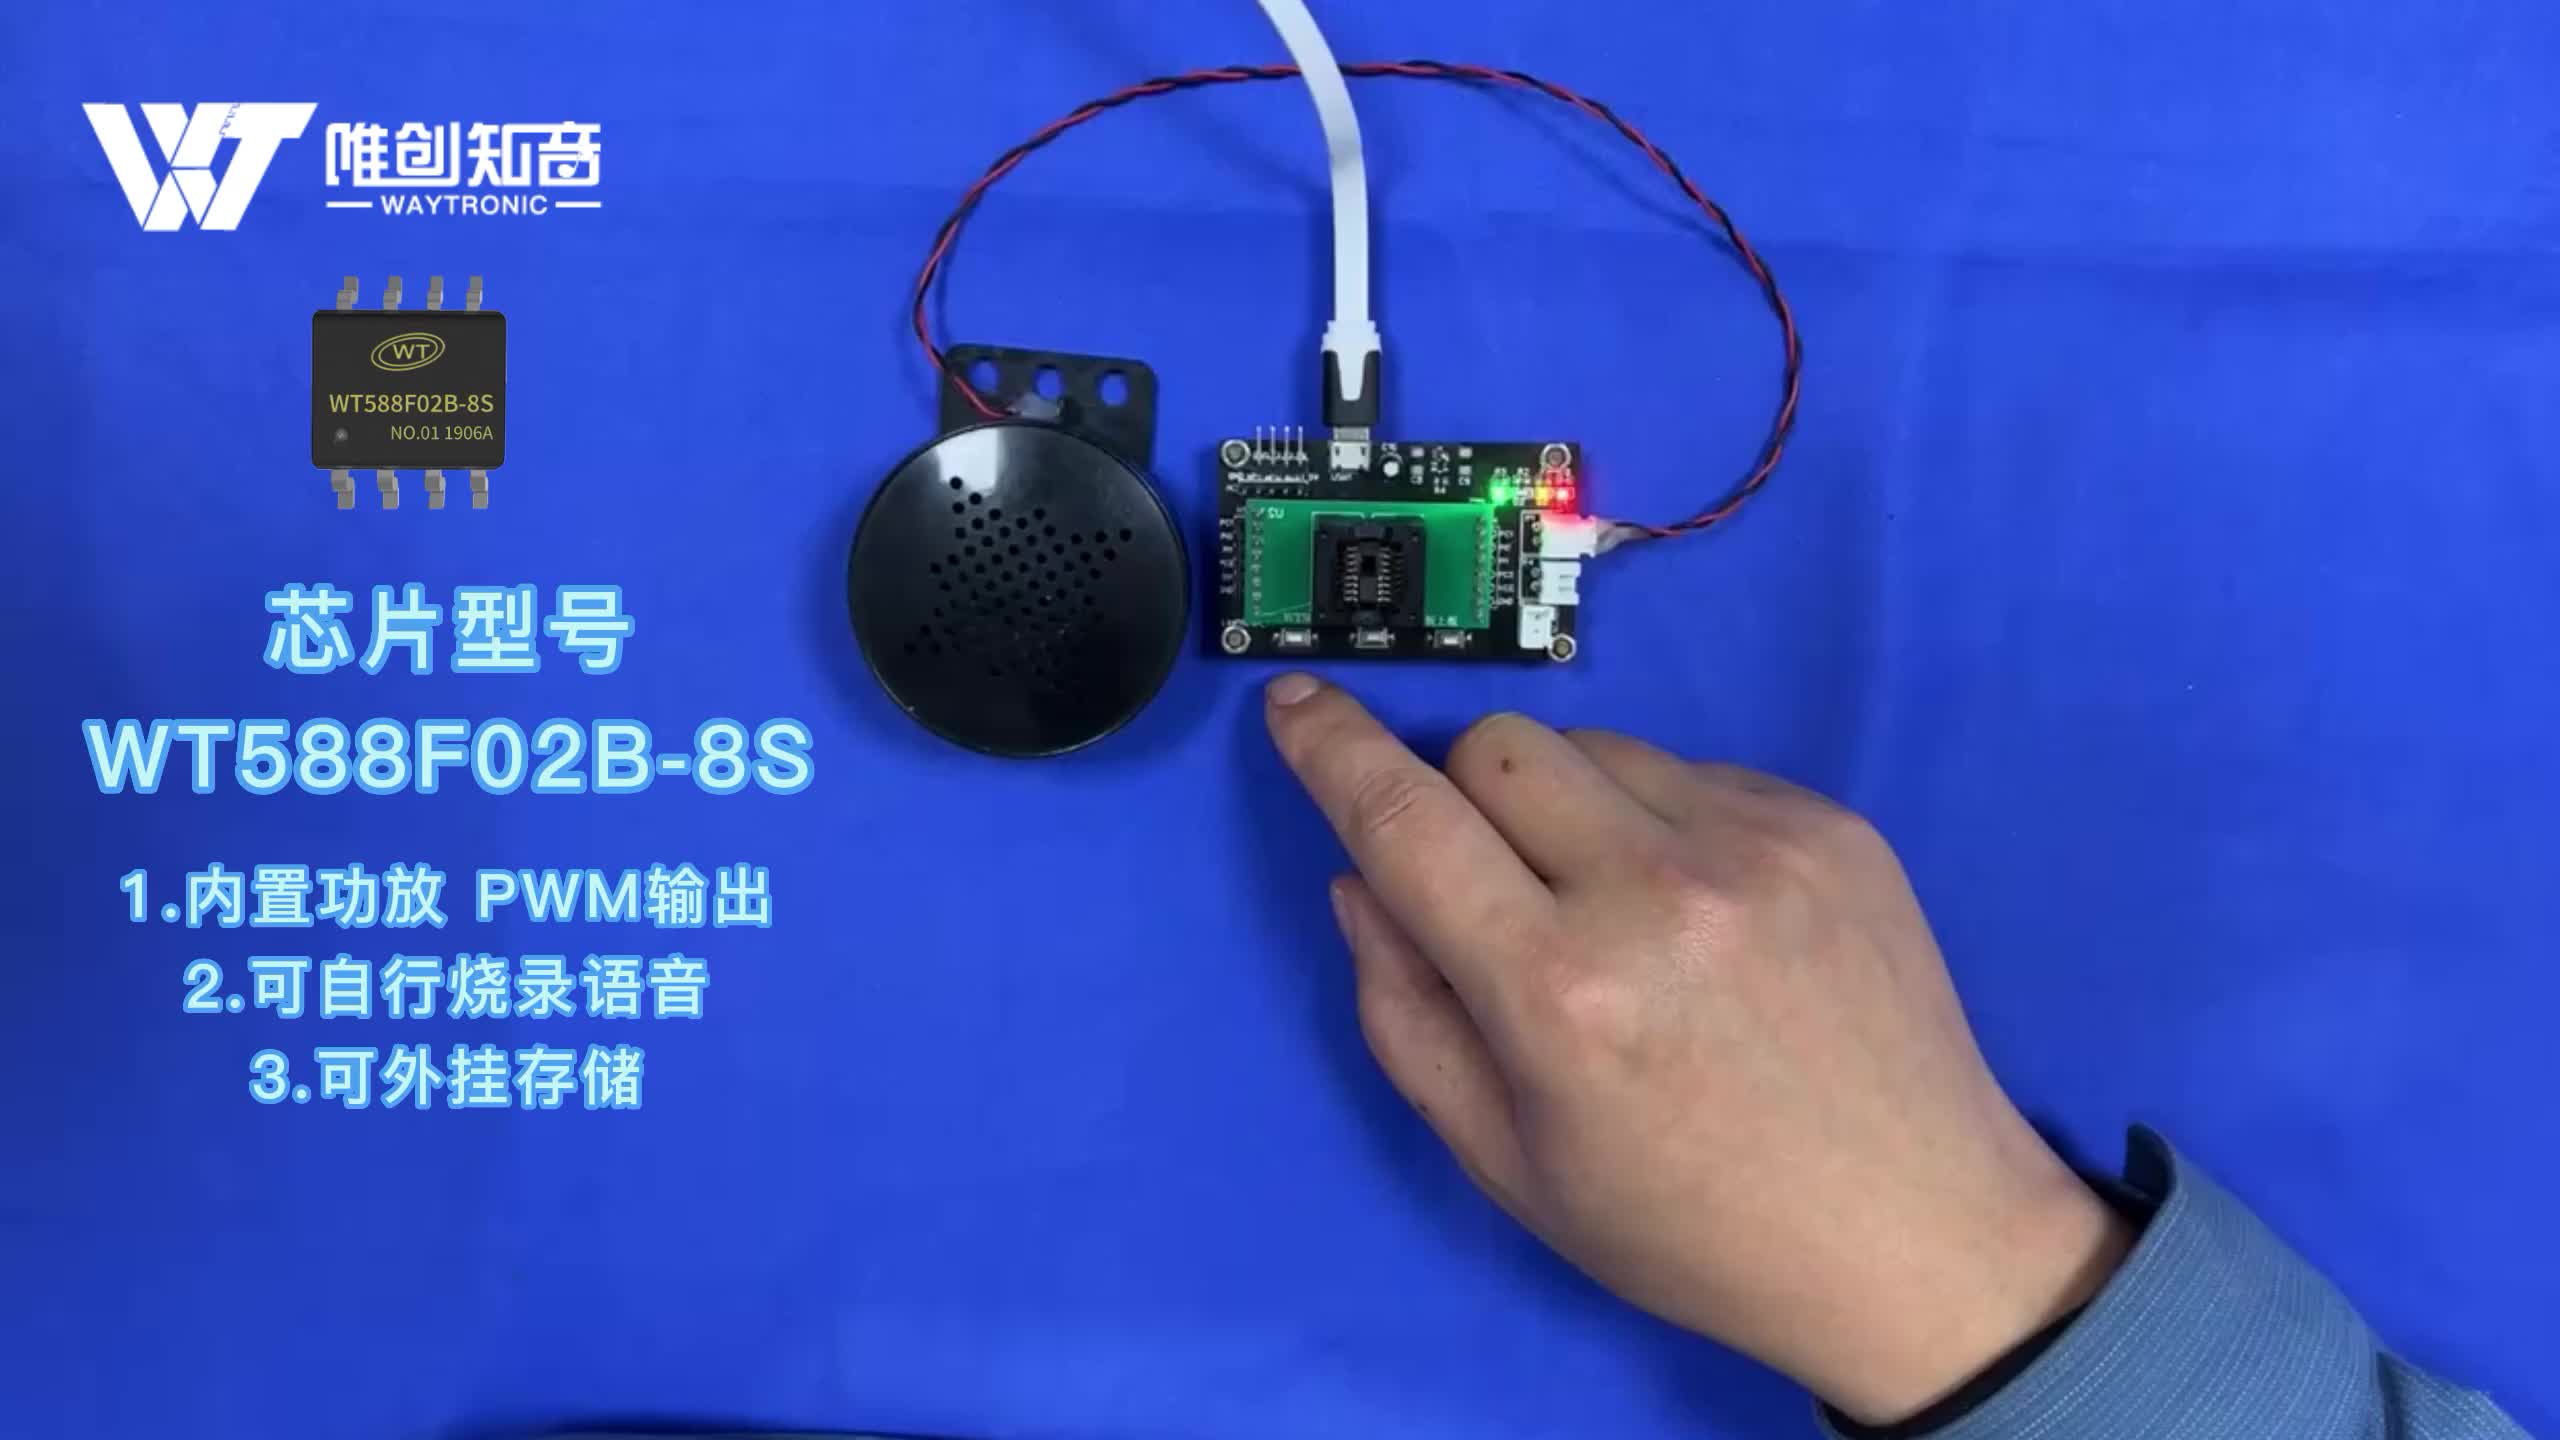 電飯煲語音芯片應用方案，支持自行燒錄語音與功能 WT588F02B-8S